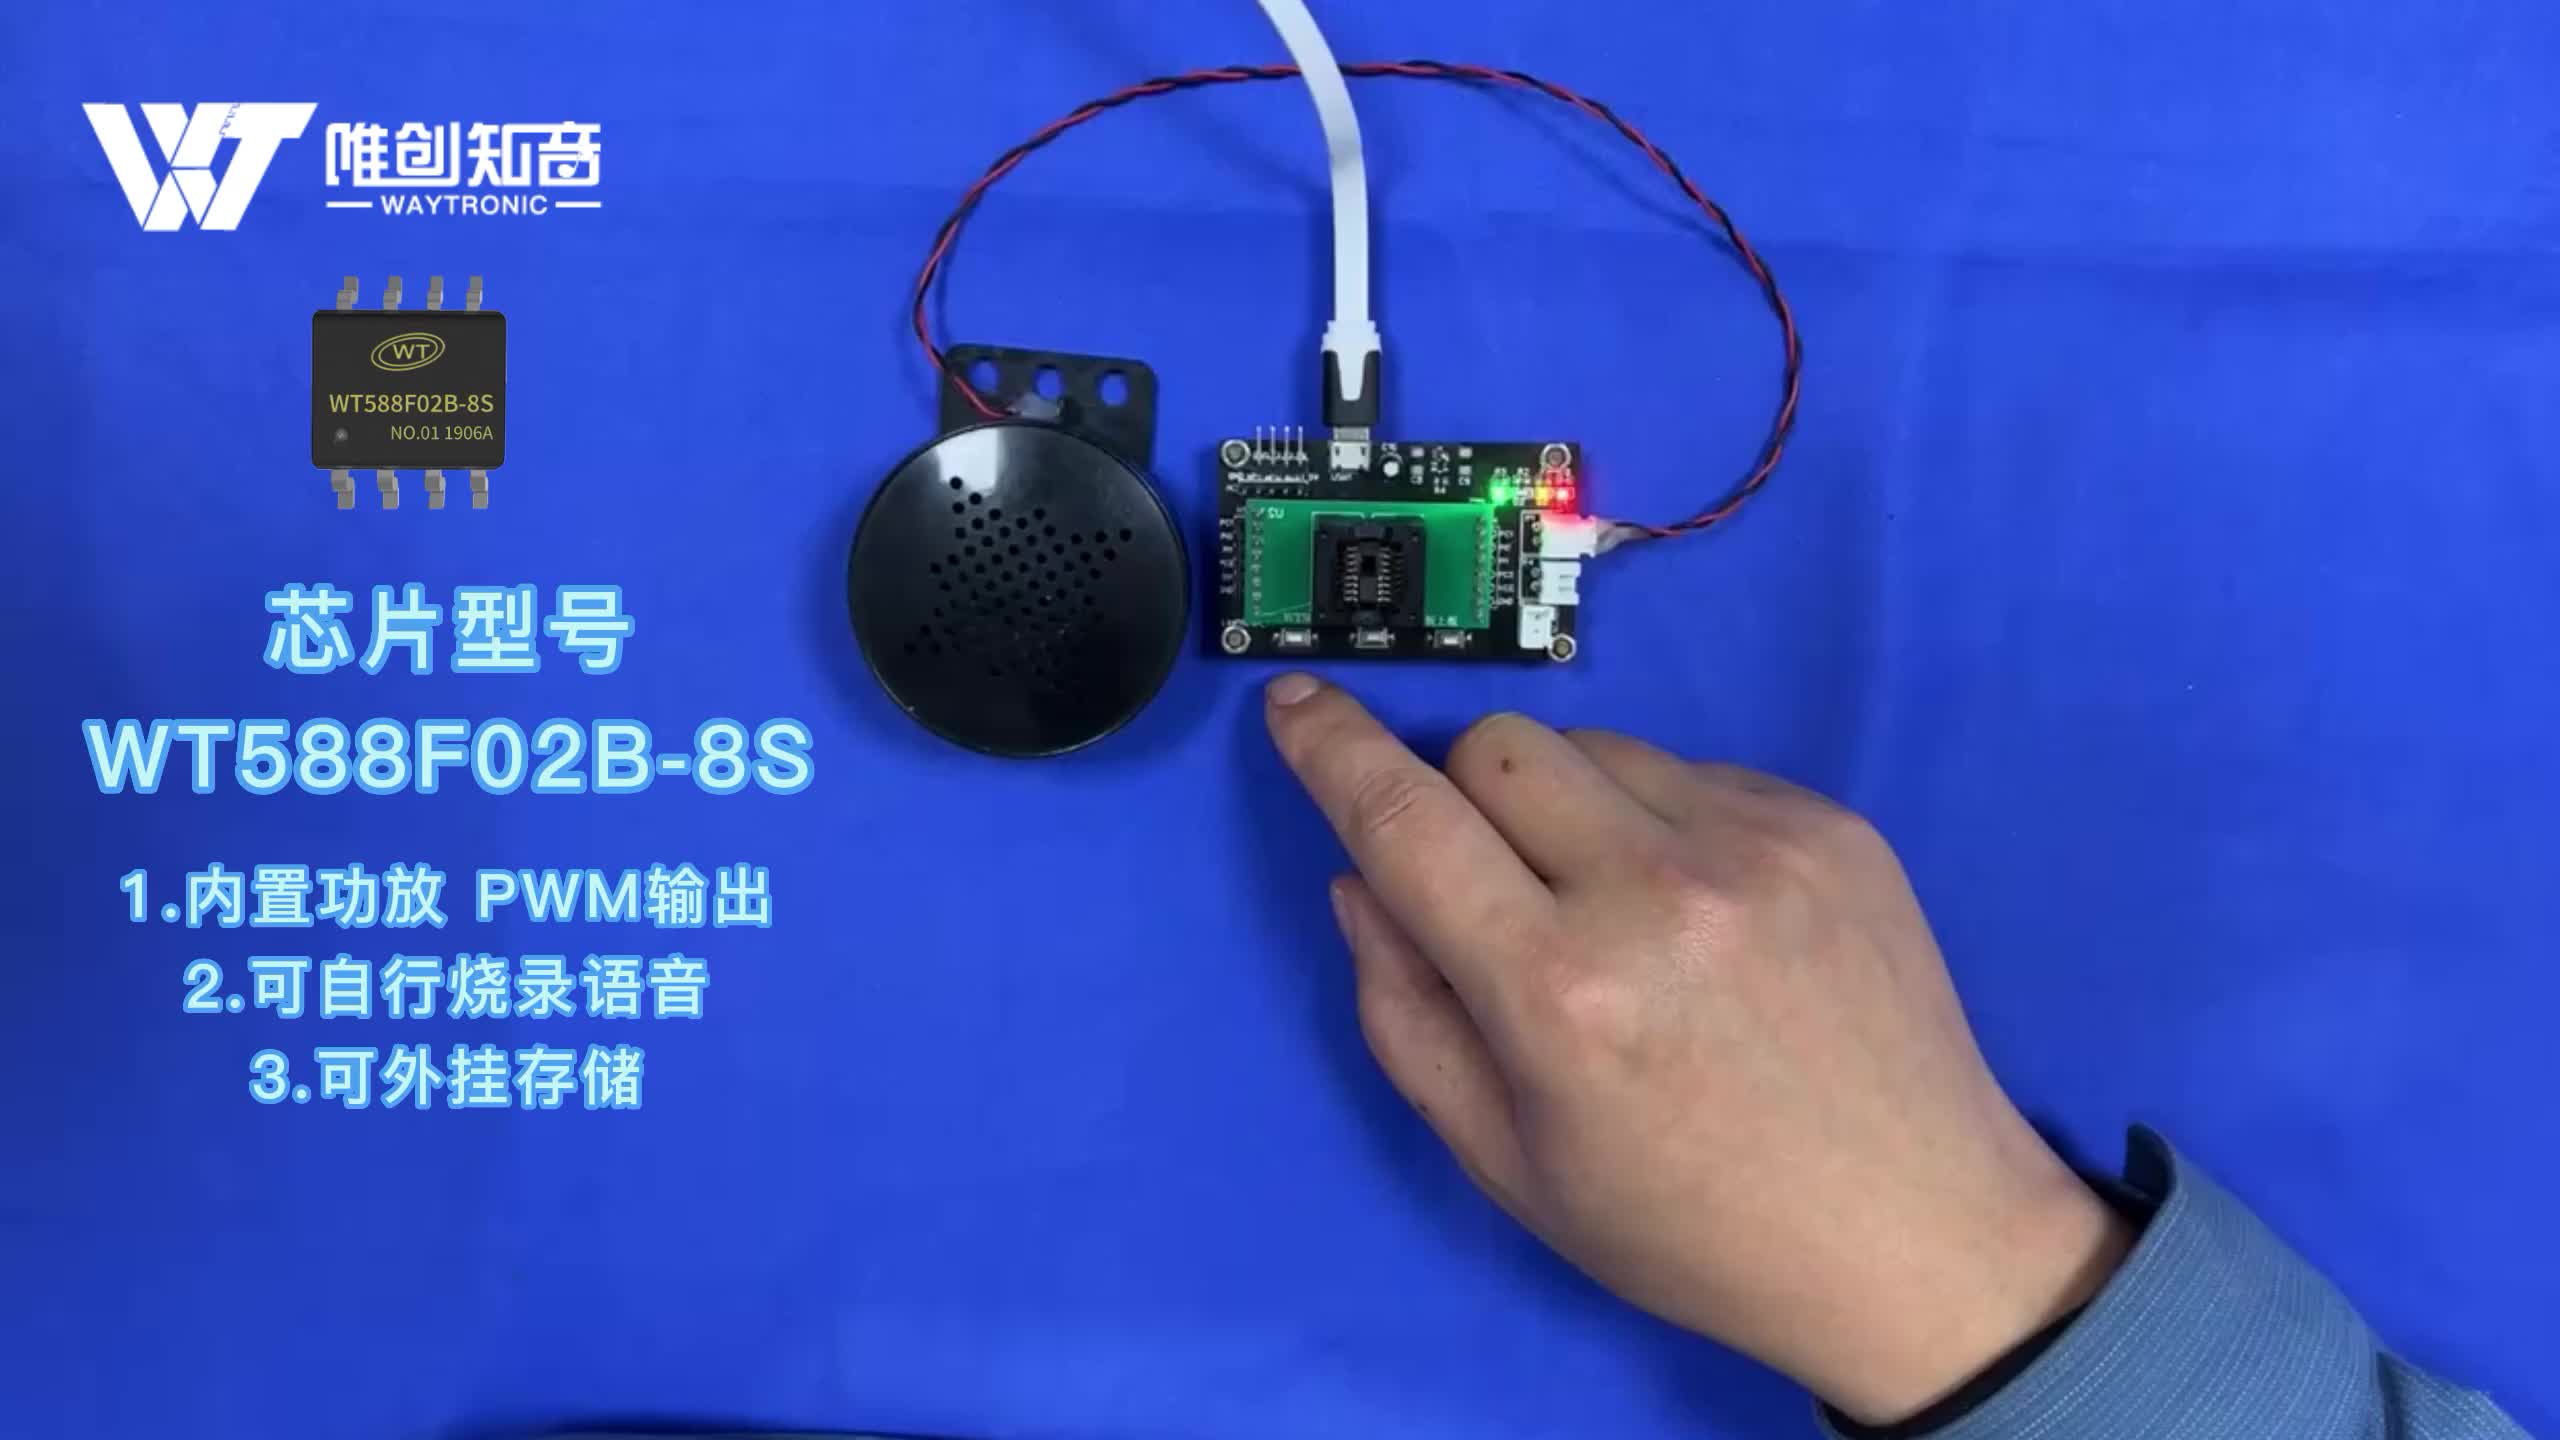 電飯煲語音芯片應用方案，支持自行燒錄語音與功能 WT588F02B-8S